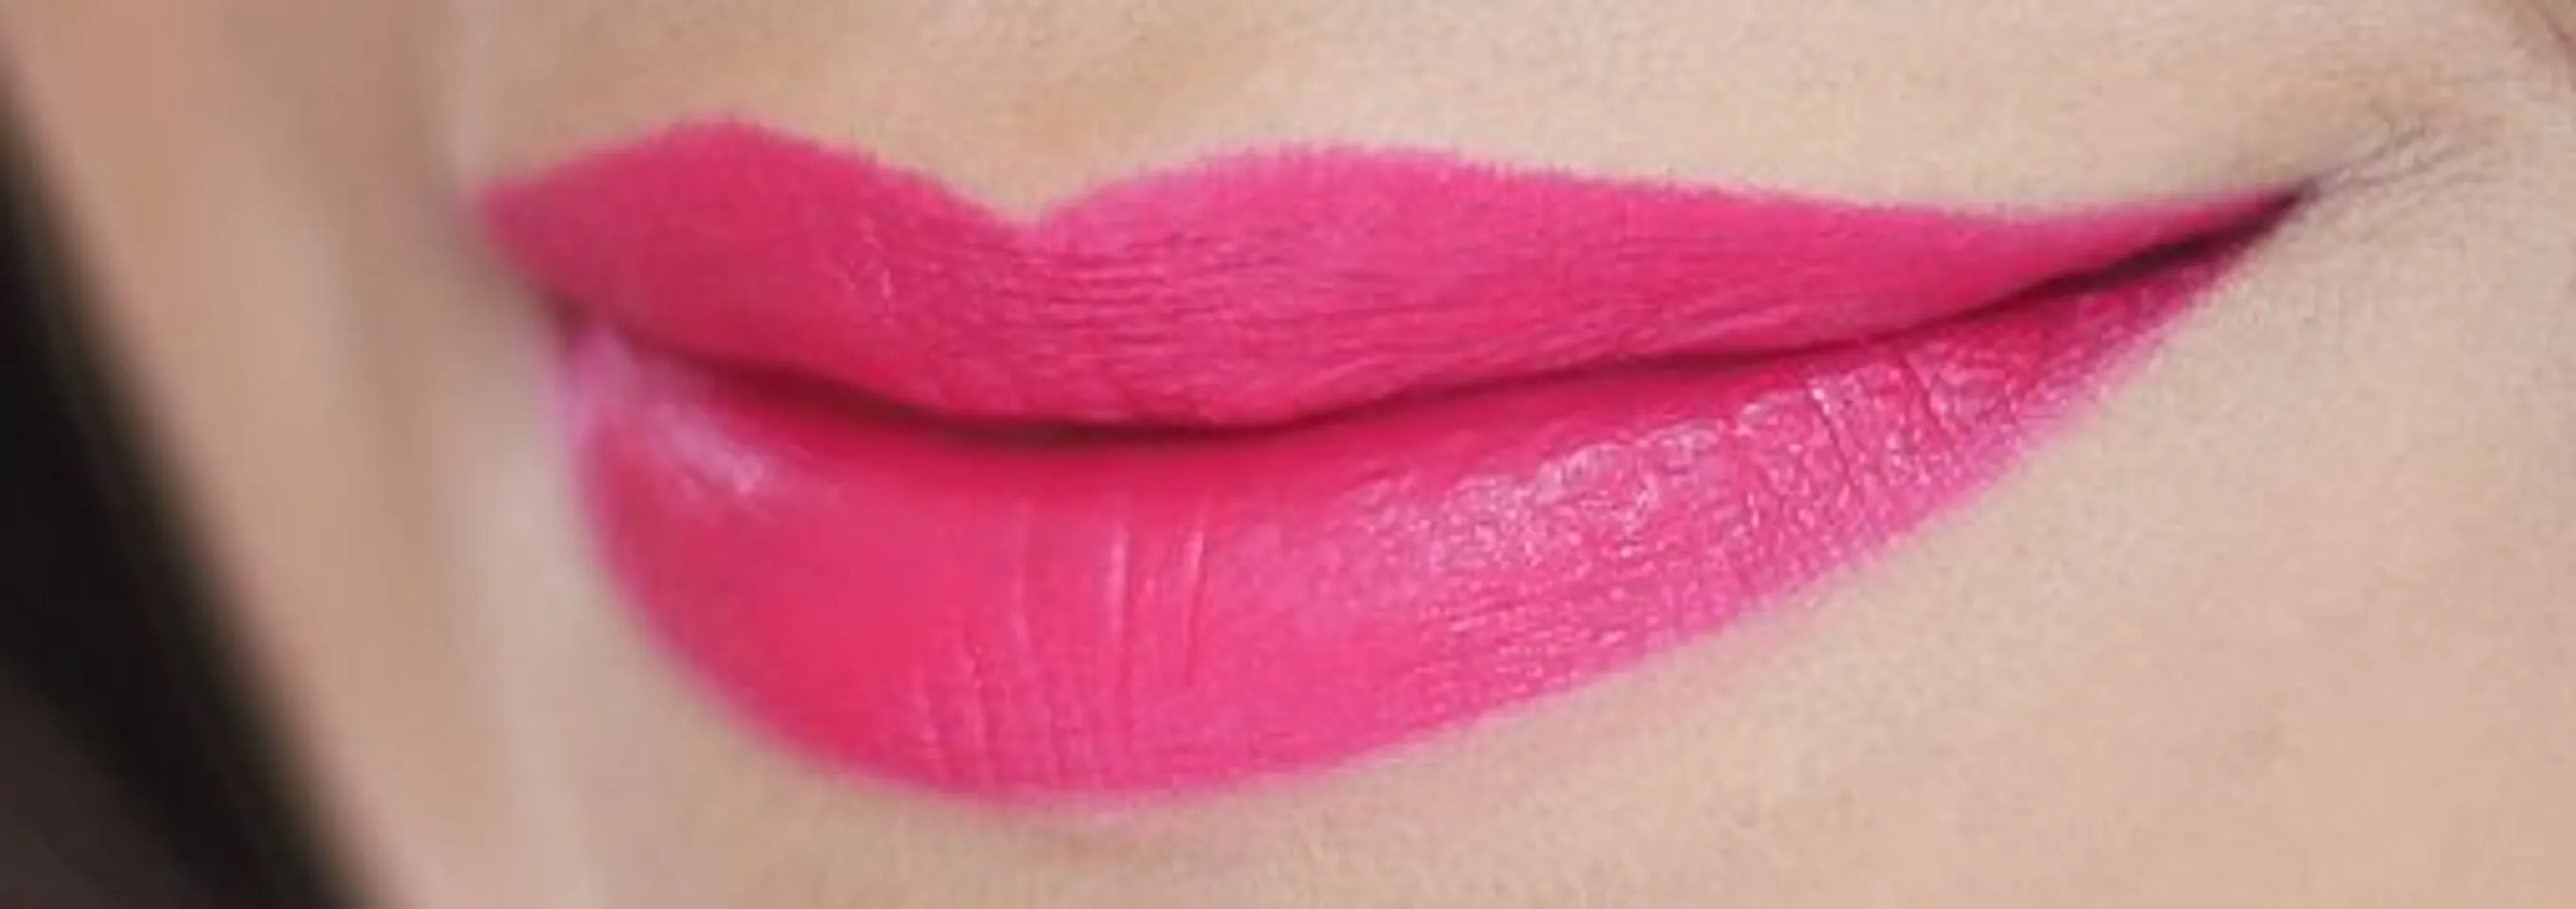 Son Sephora mã 12 hồng cánh sen cho đôi môi dịu ngọt, thu hút